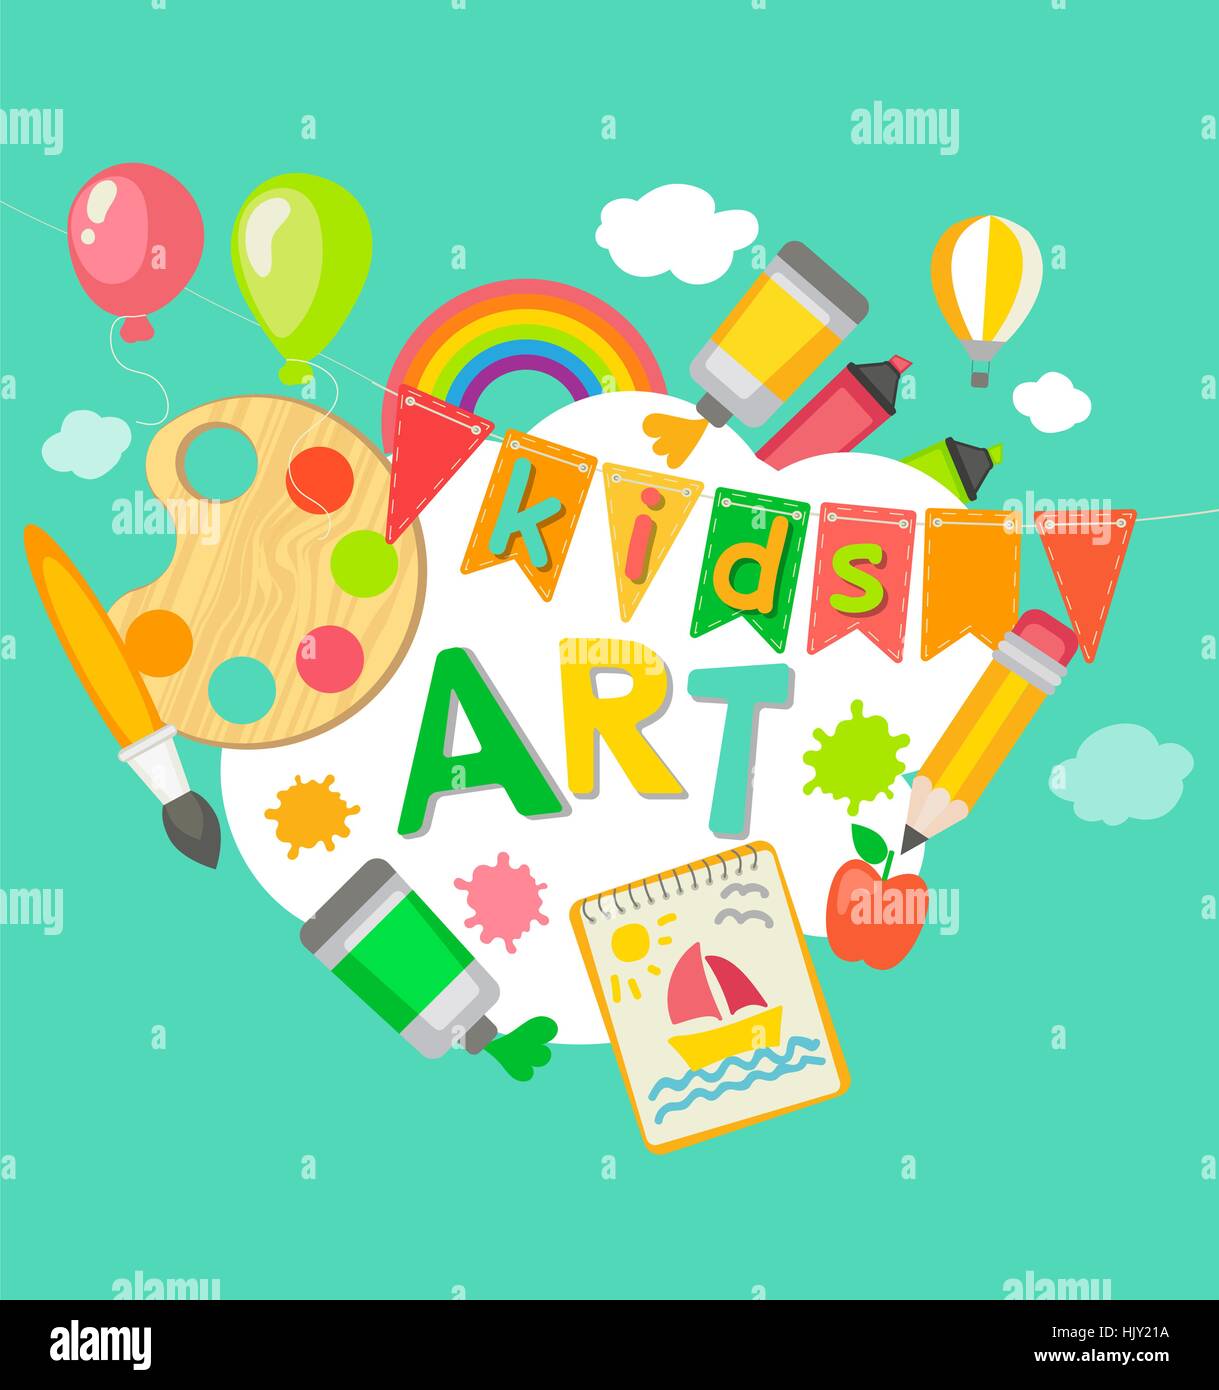 Themed Kids art poster in flat style, vector illustration. Frame with artistic objects, vector illustration for children art school, summer art fest. Stock Vector